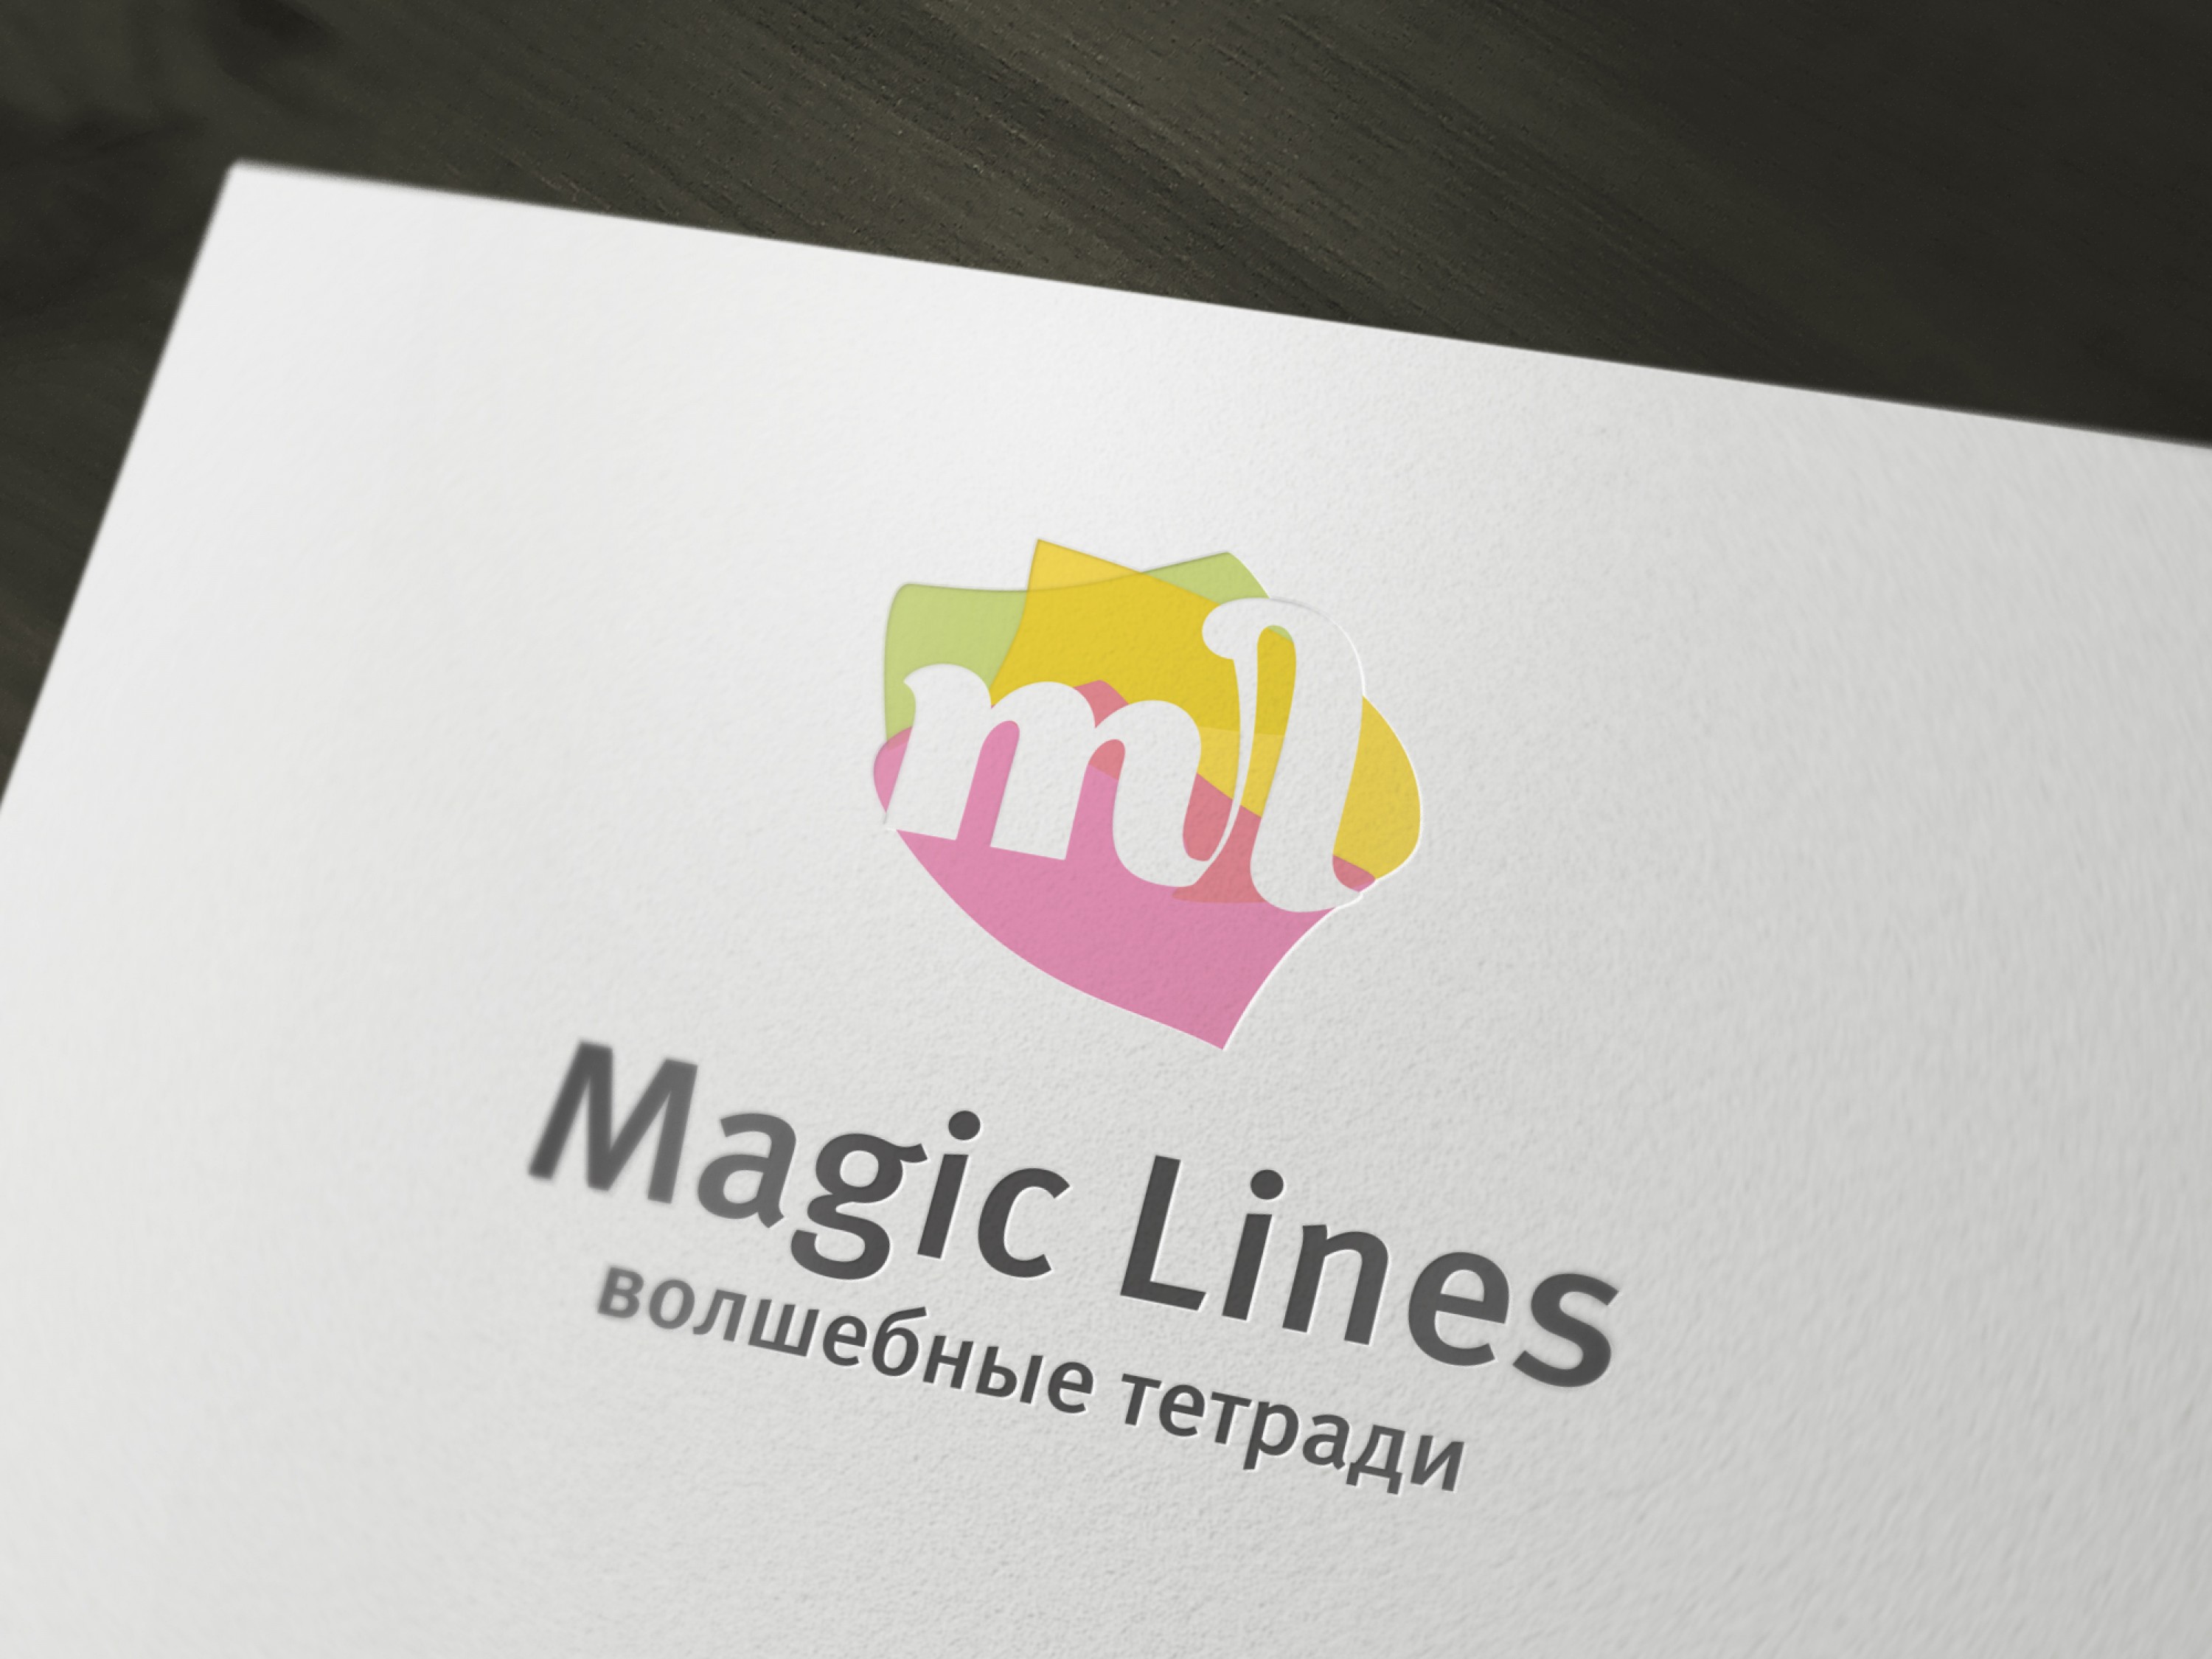 Логотип бренда Magic Lines 2014